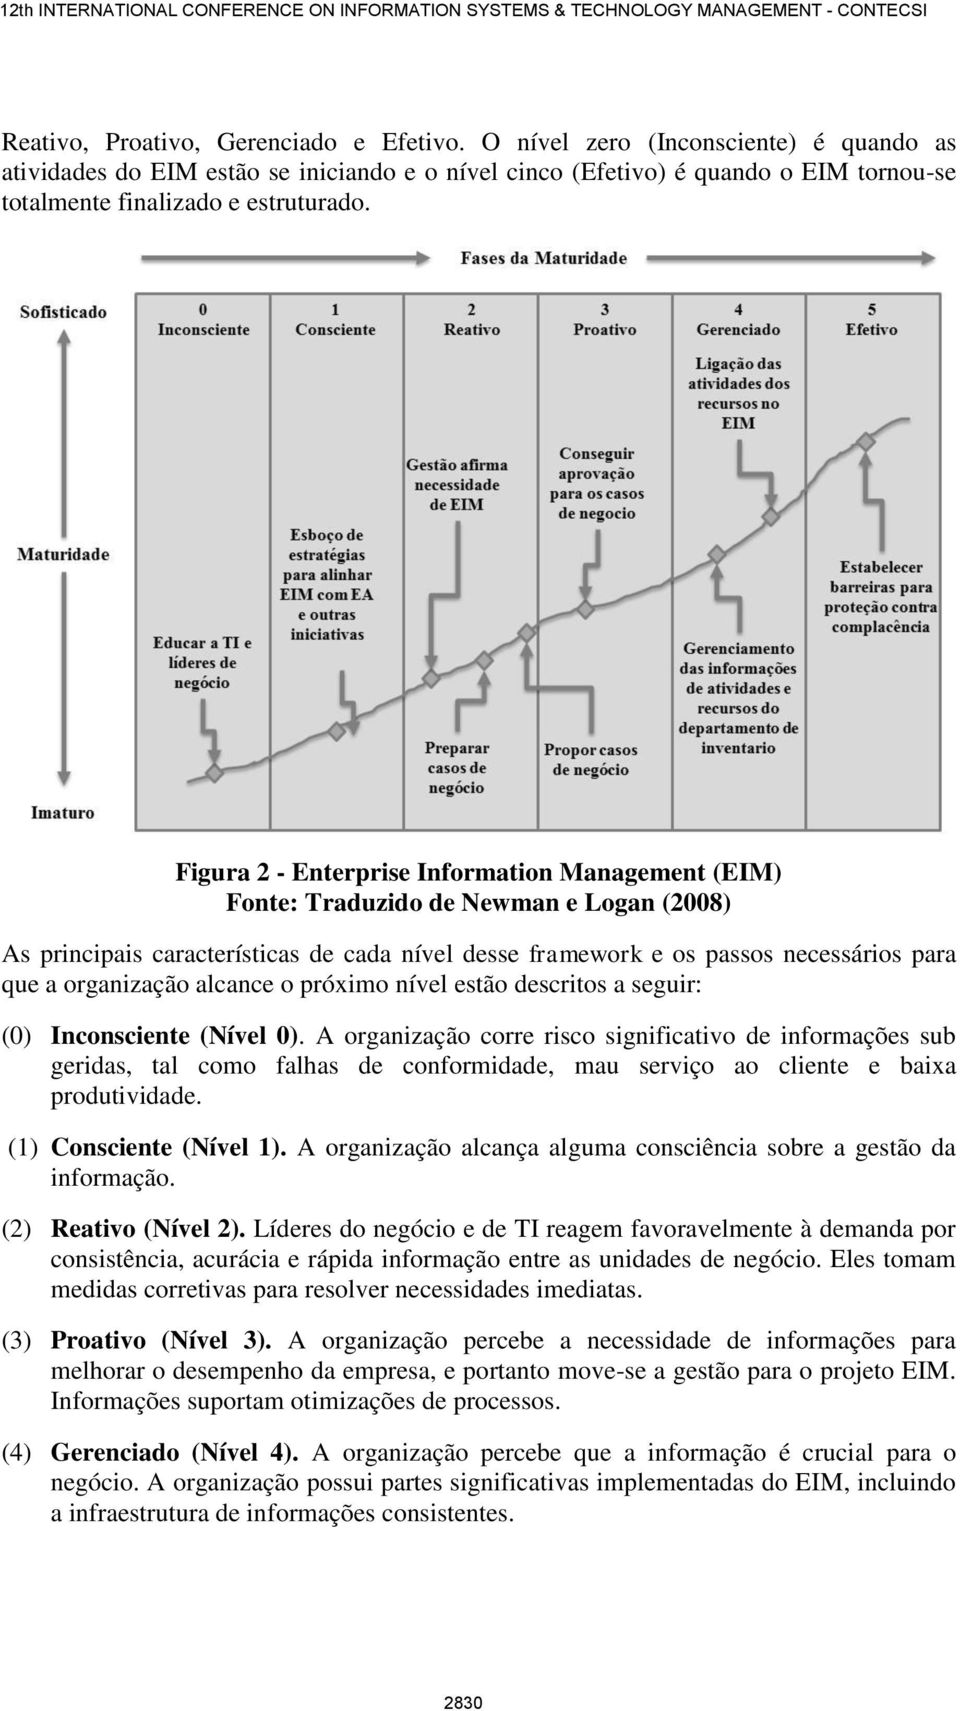 Figura 2 - Enterprise Information Management (EIM) Fonte: Traduzido de Newman e Logan (2008) As principais características de cada nível desse framework e os passos necessários para que a organização